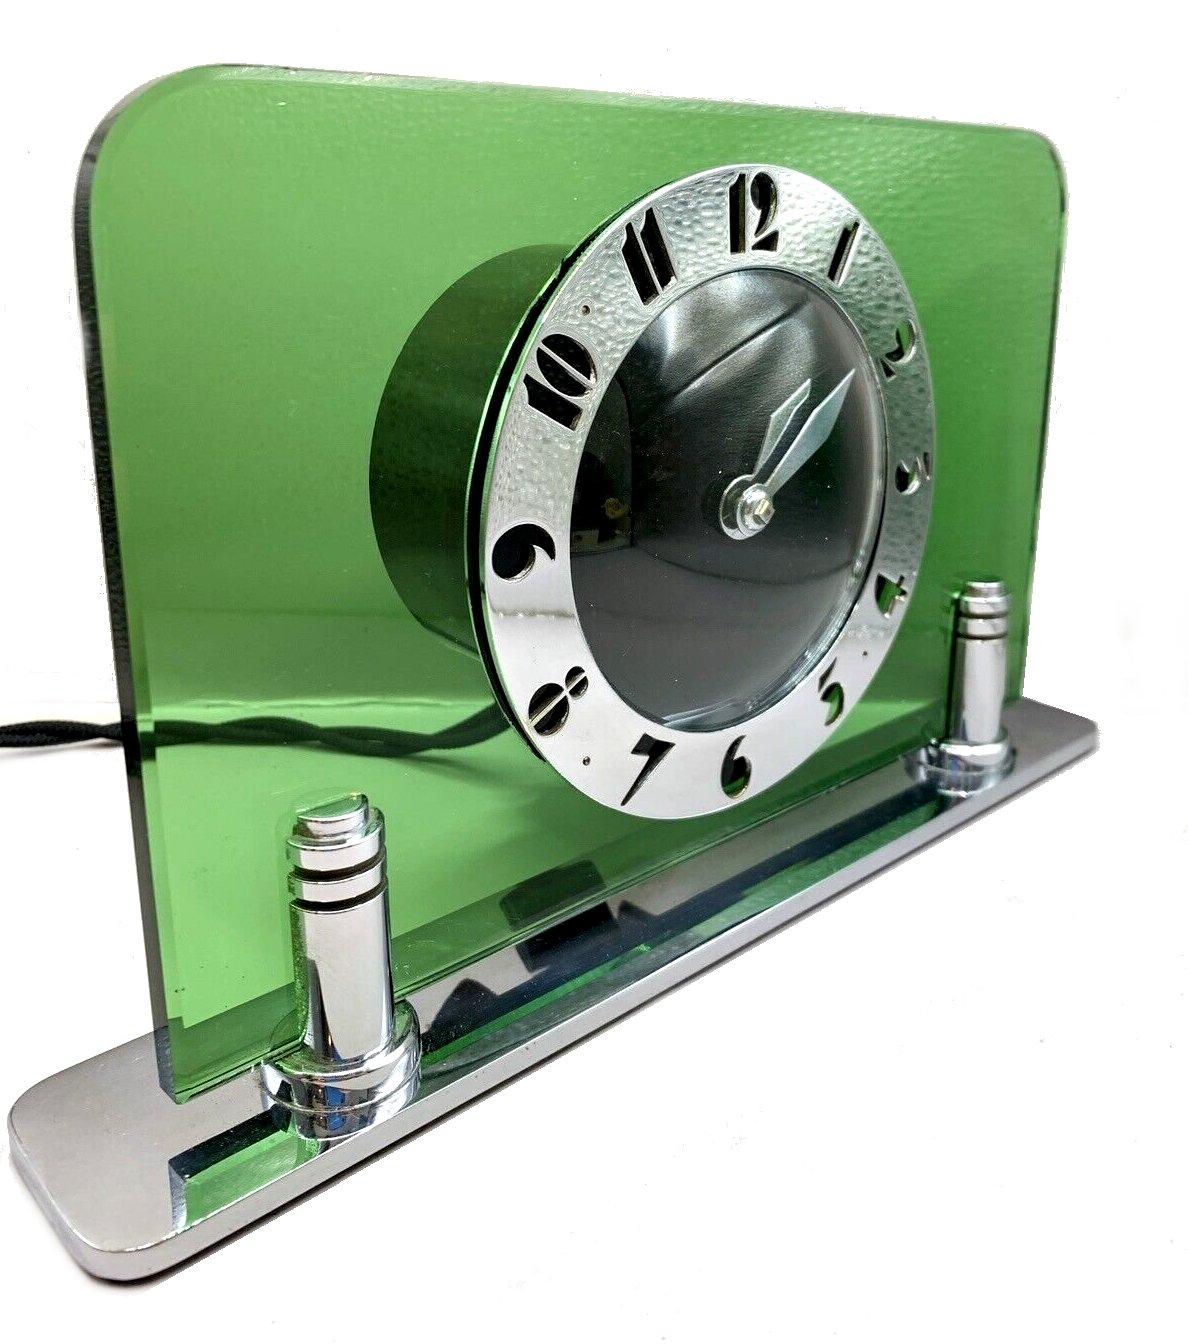 Pendule originale Art Déco Moderniste des années 1930 en verre vert et chrome par les horlogers anglais Smiths. Magnifique verre vert pois avec un cadran noir et des chiffres déco stylisés en chrome fretté. Condit, en parfait état de marche. C'est